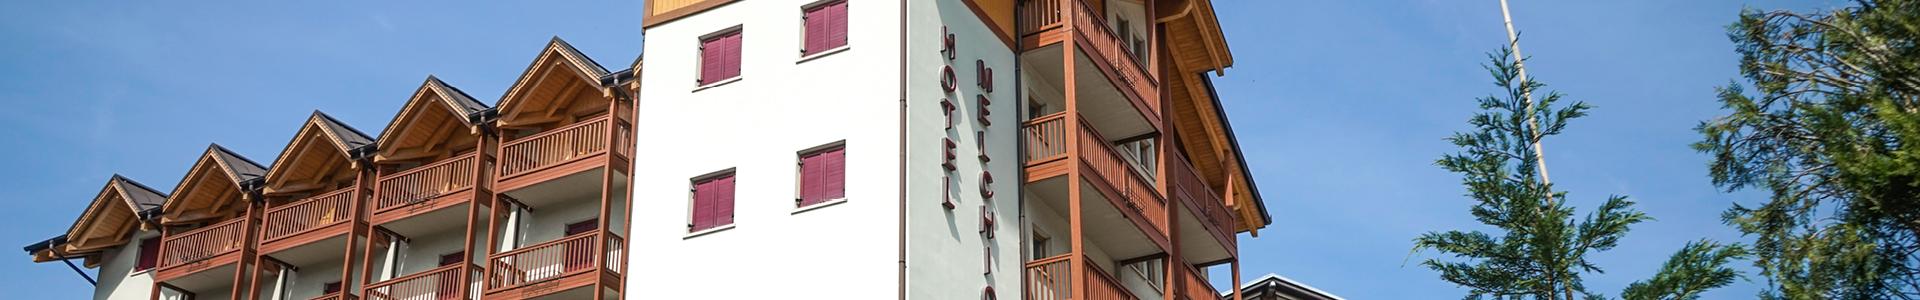 GBF costruzione sito web Hotel Melchiori